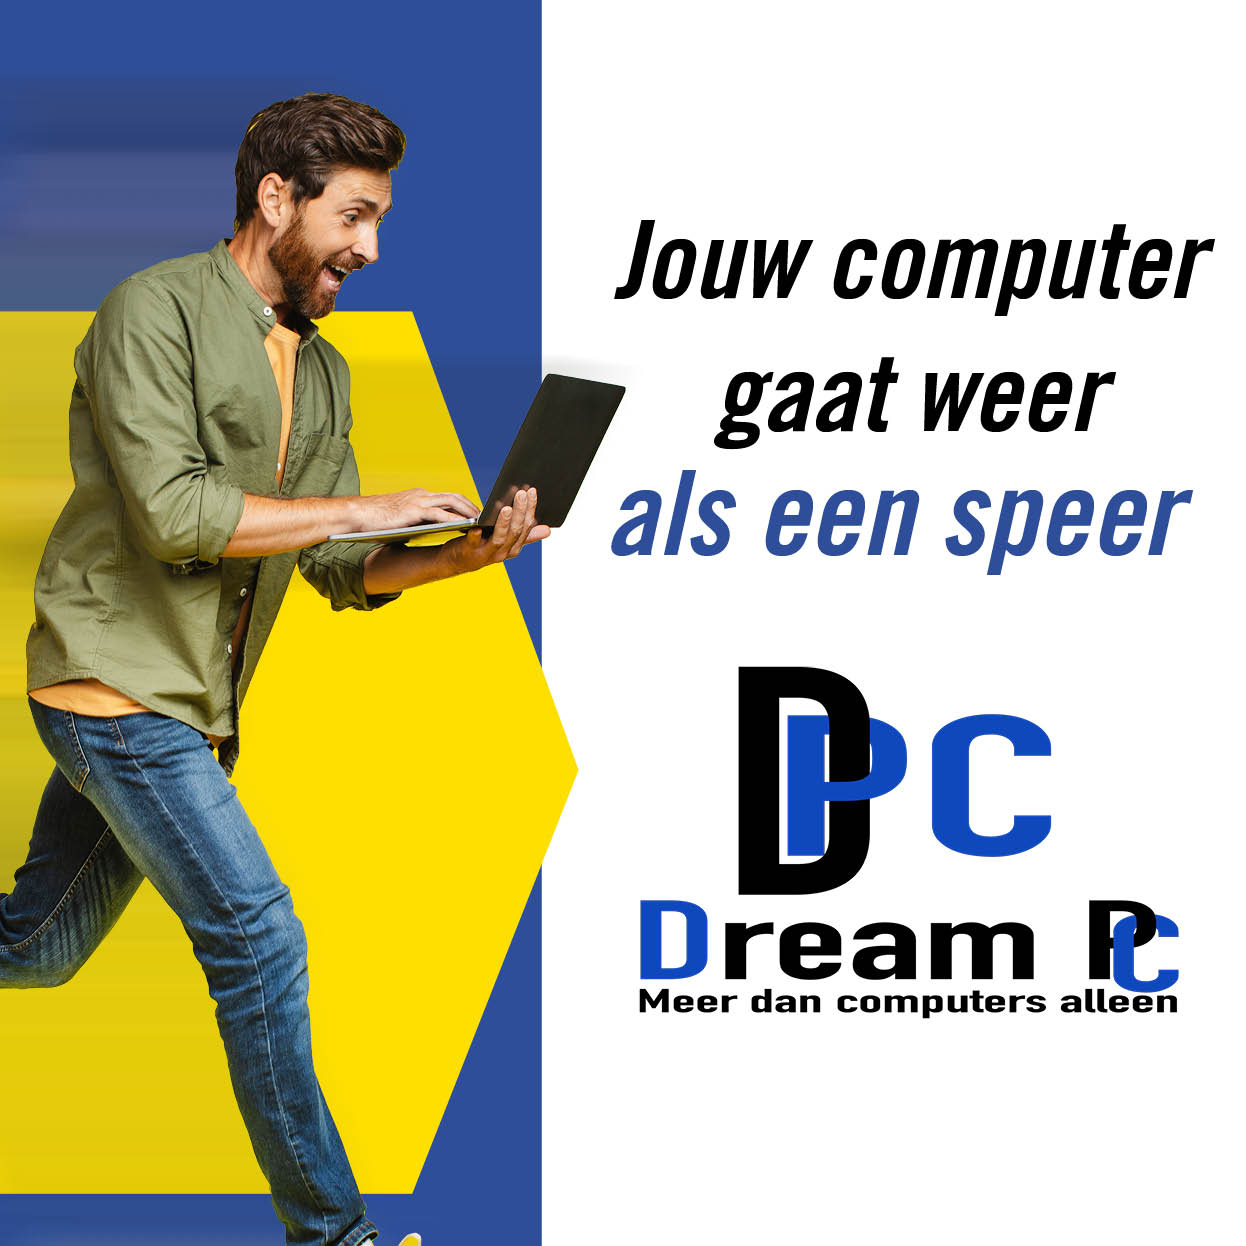 08285 - Dream PC